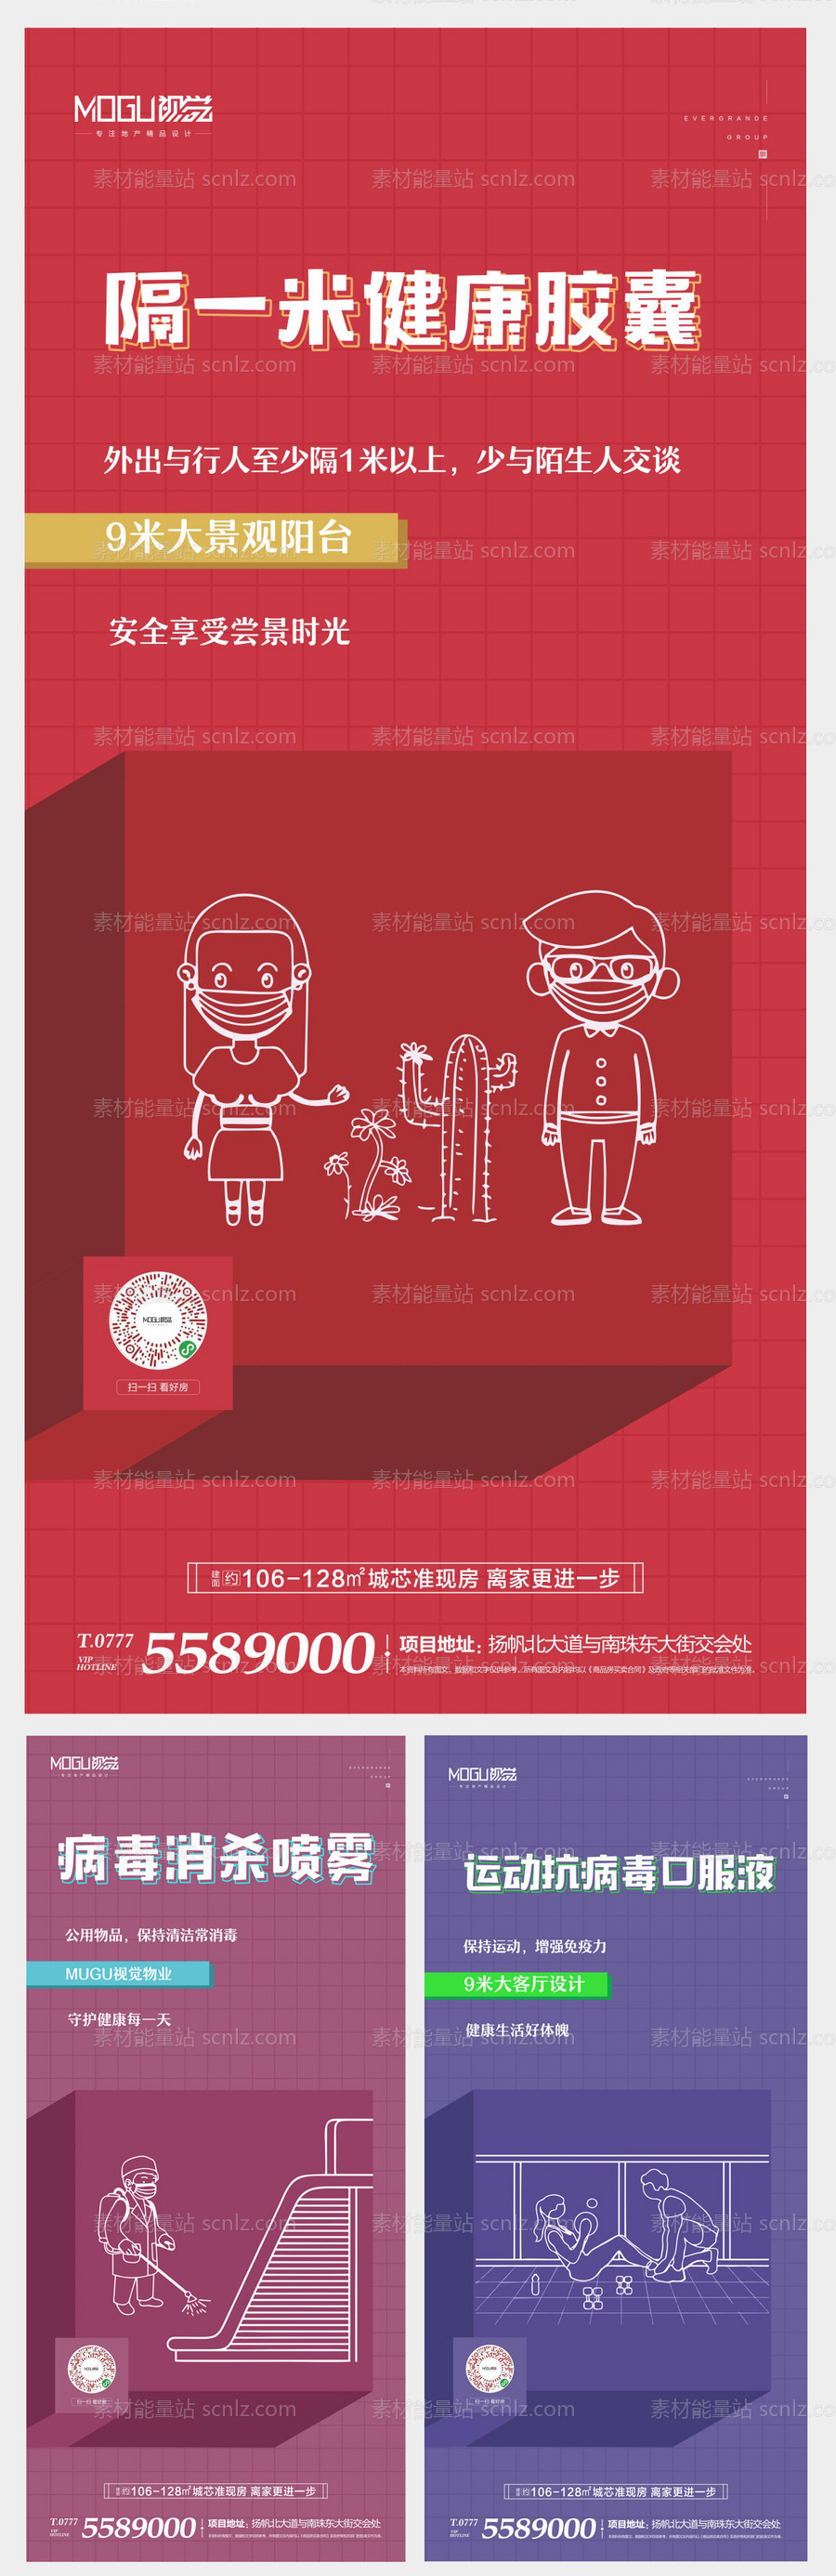 素材能量站-地产武汉预防系列微信海报